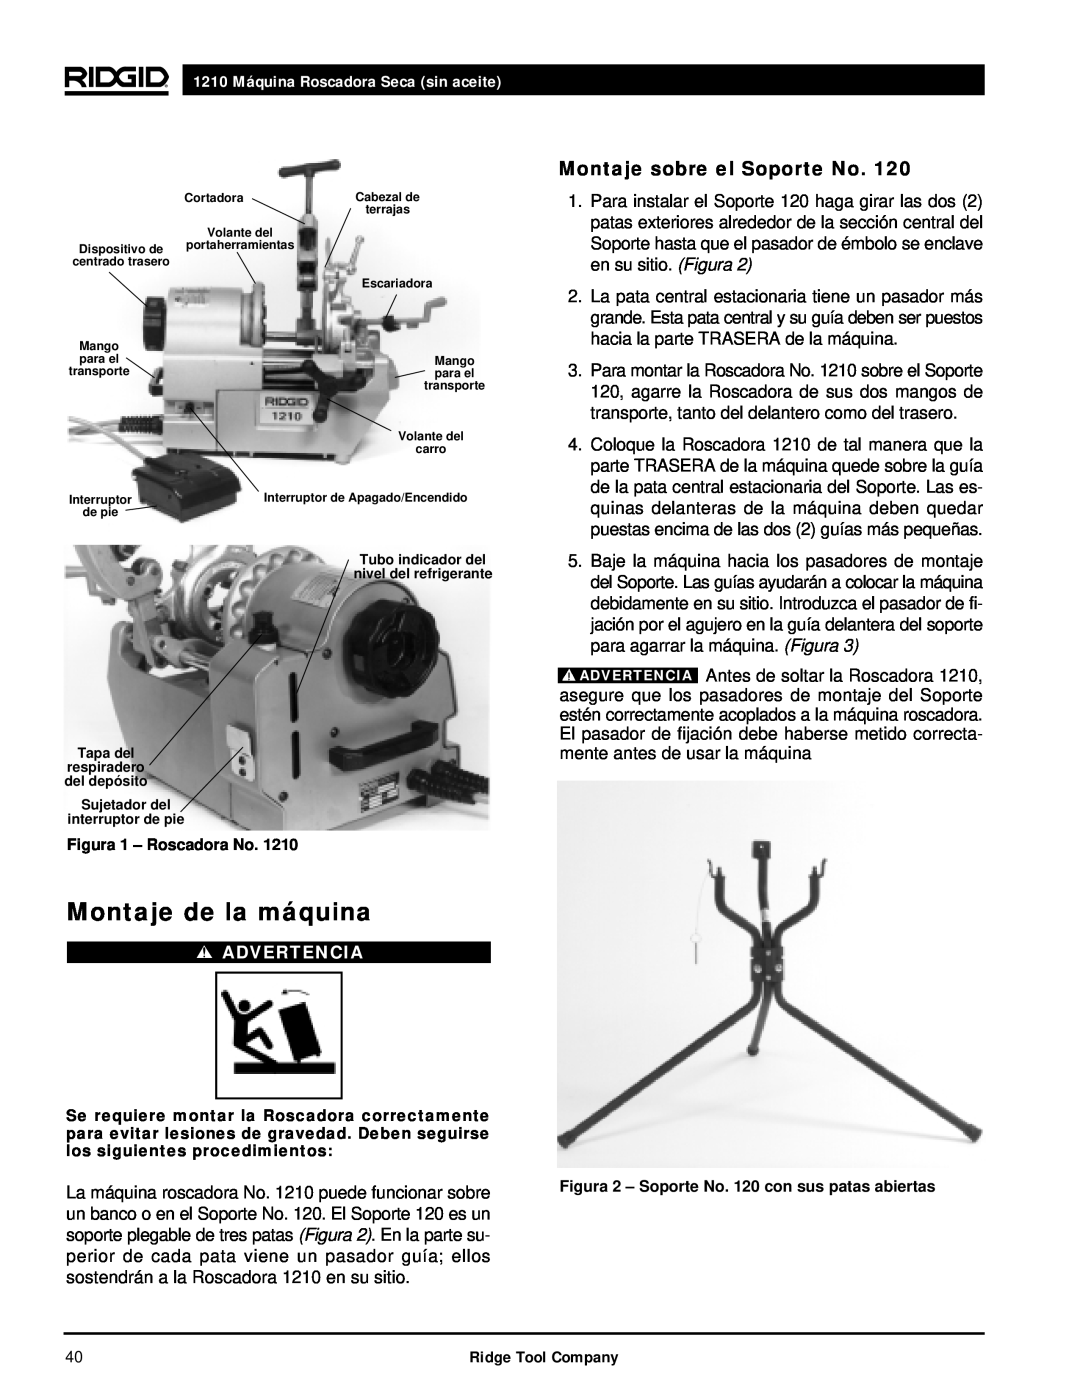 RIDGID manual Montaje de la máquina, Montaje sobre el Soporte No, 1210 Máquina Roscadora Seca sin aceite, Advertencia 